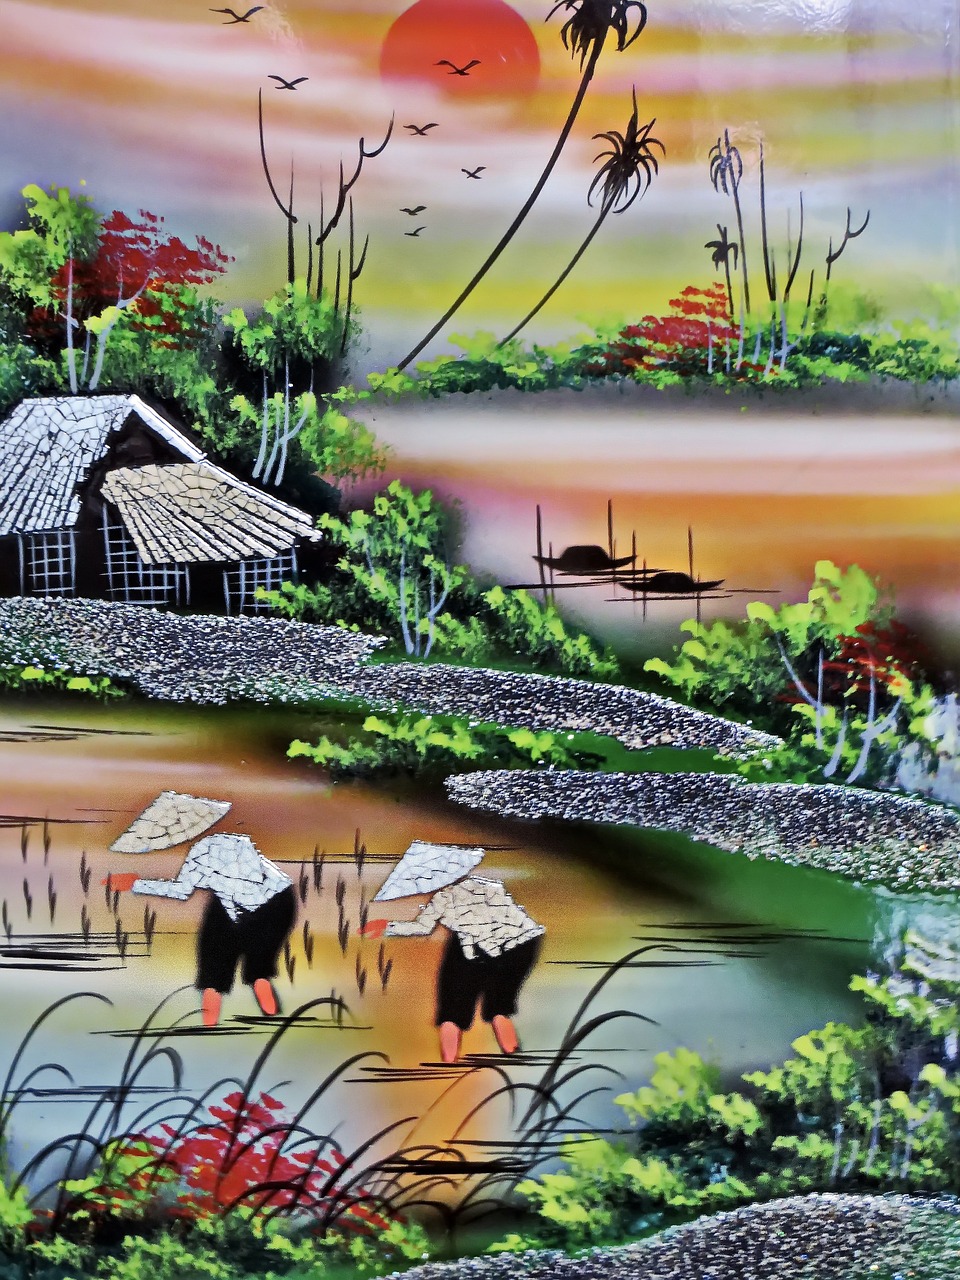 viet nam saigon painting free photo